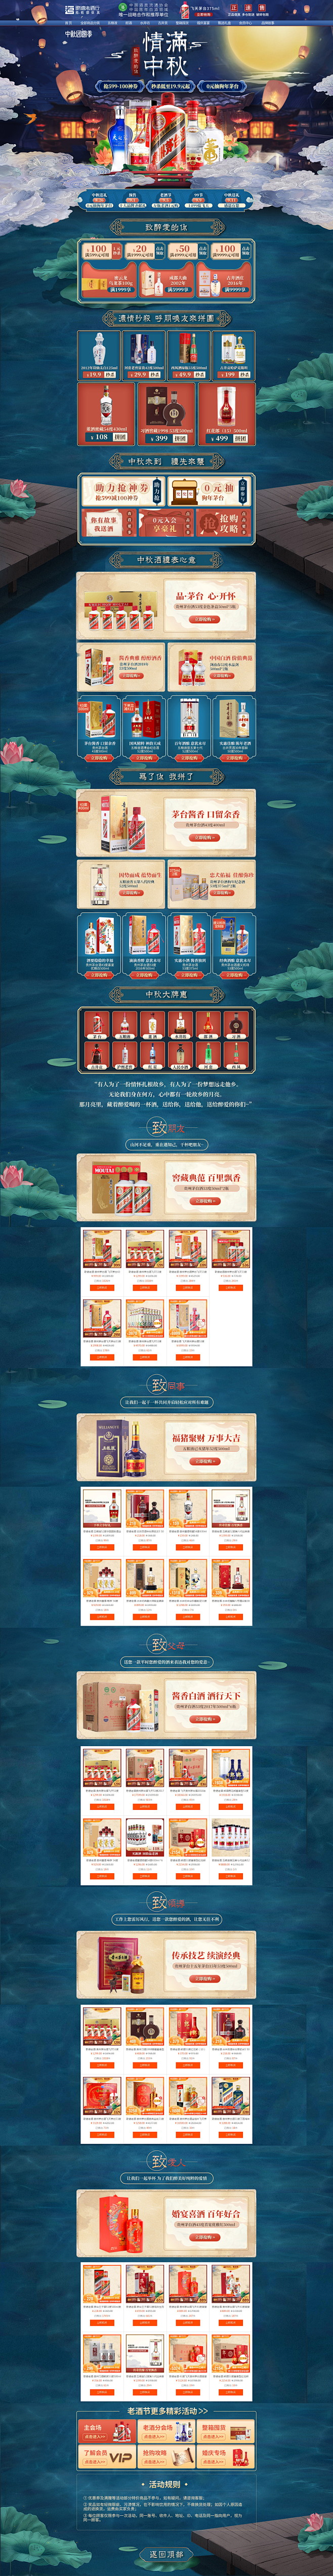 @艺鱼视觉
酒水天猫店铺首页活动页面设计